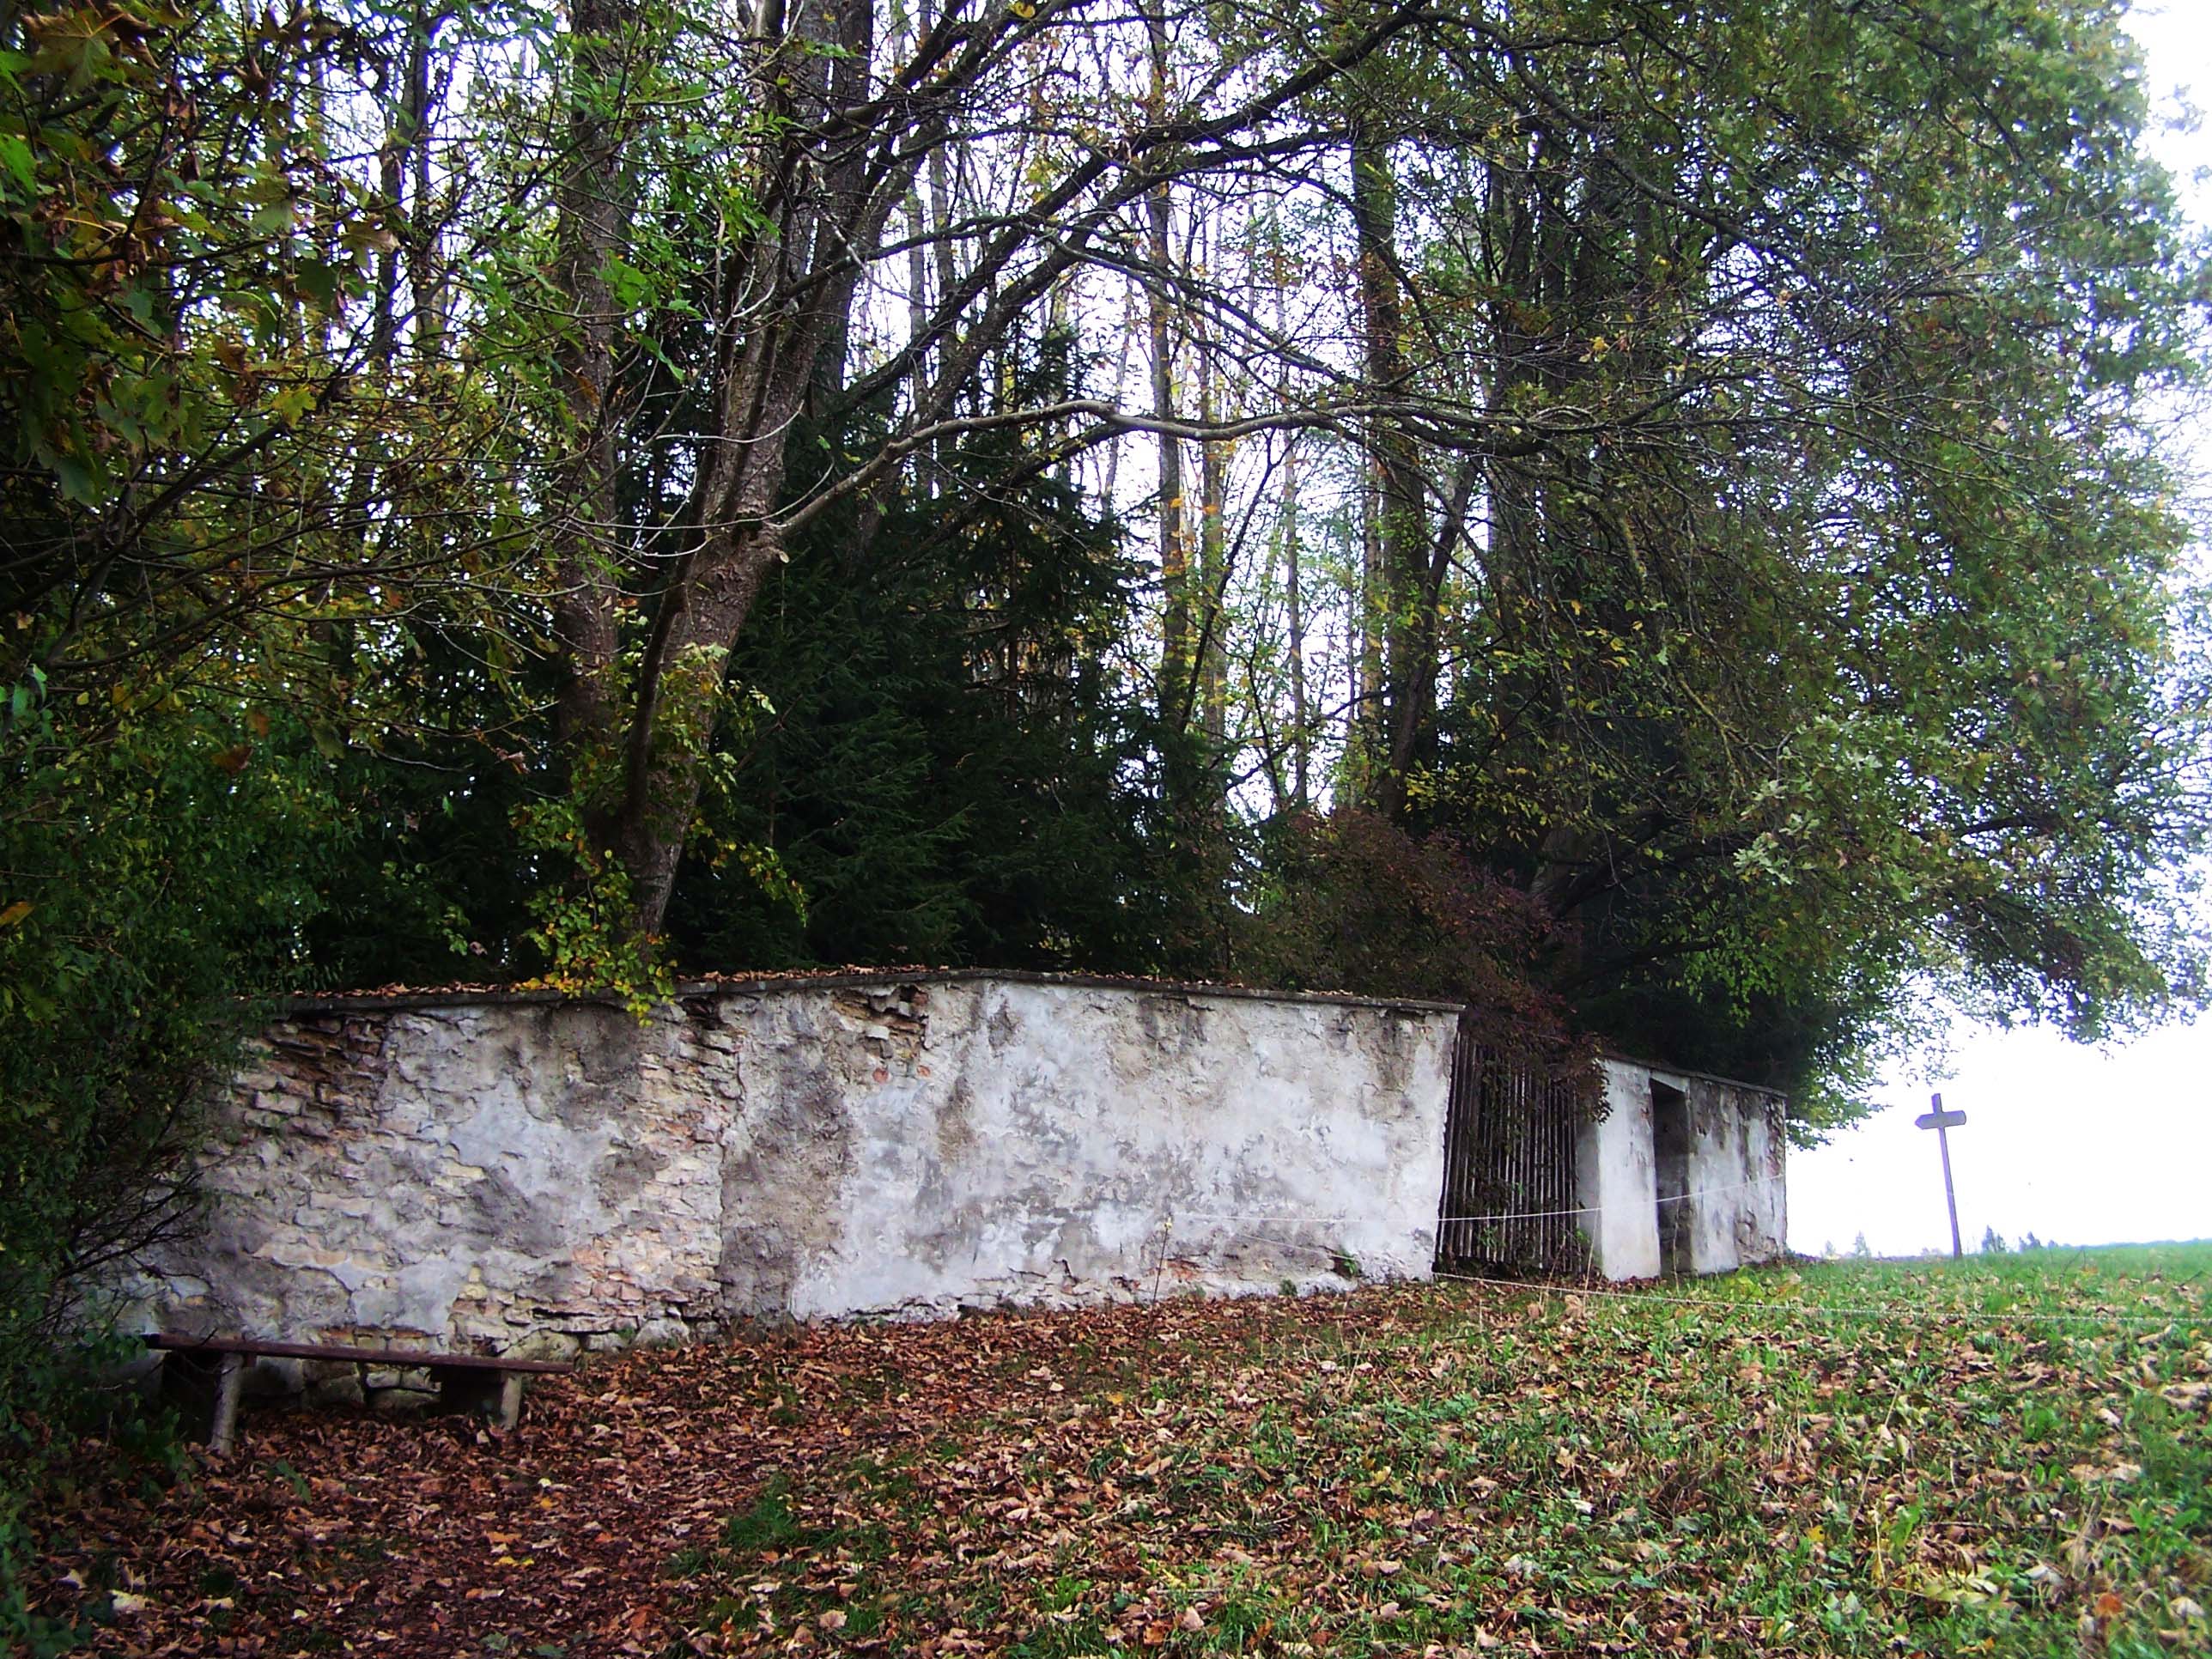 Gates of Wessobrunn